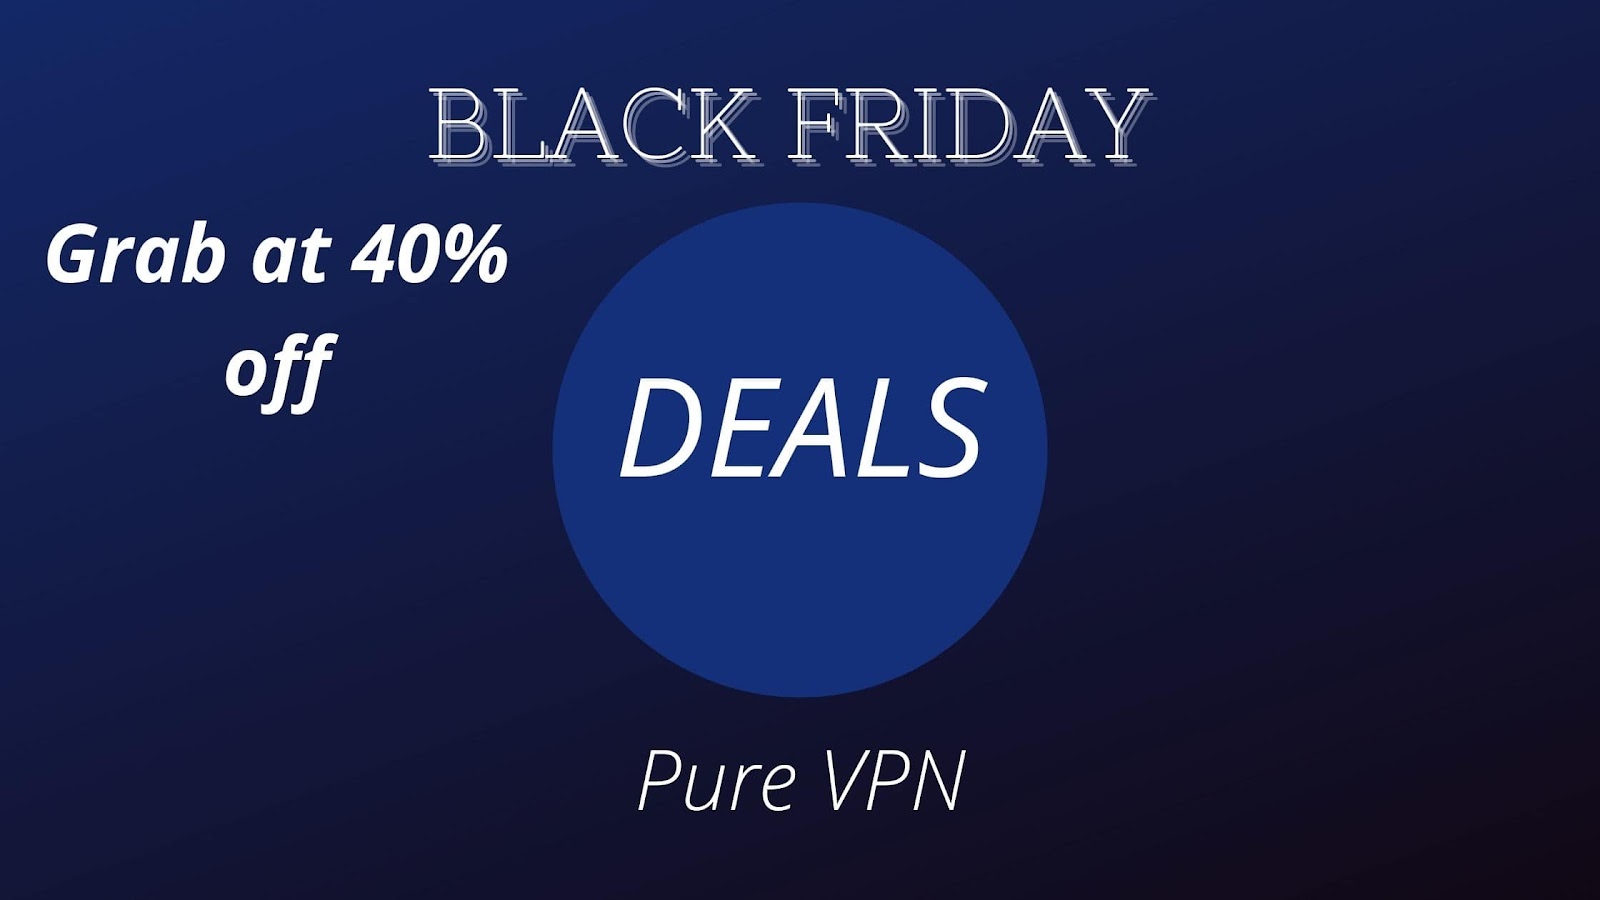 PureVPN: Grab at 40% off
